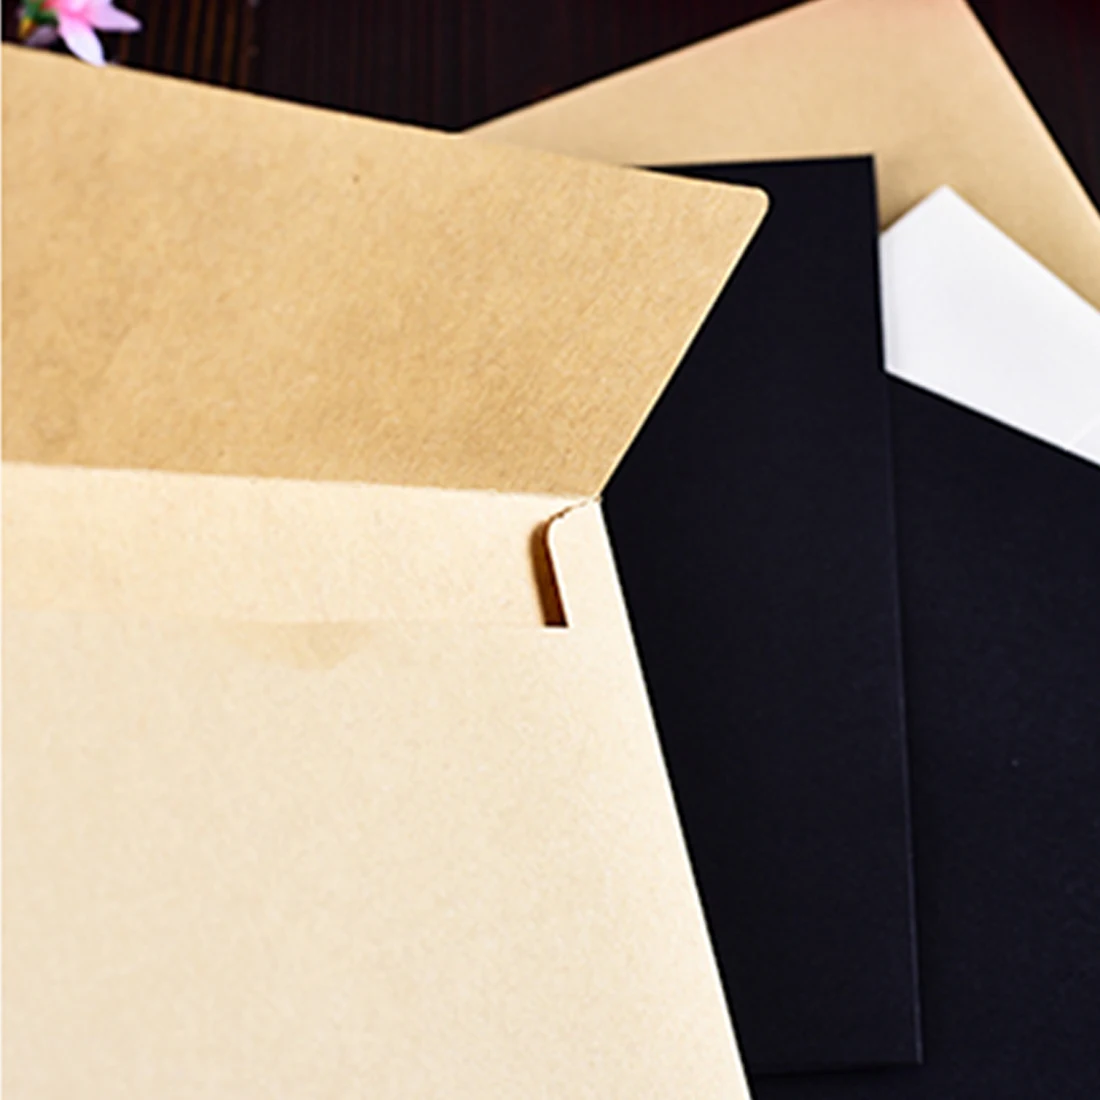 FangNymph 10 шт. Белый Черный конверт из крафт-бумаги Сообщение карты письмо стационарный хранения Бумага подарок школа Supplie канцелярскими